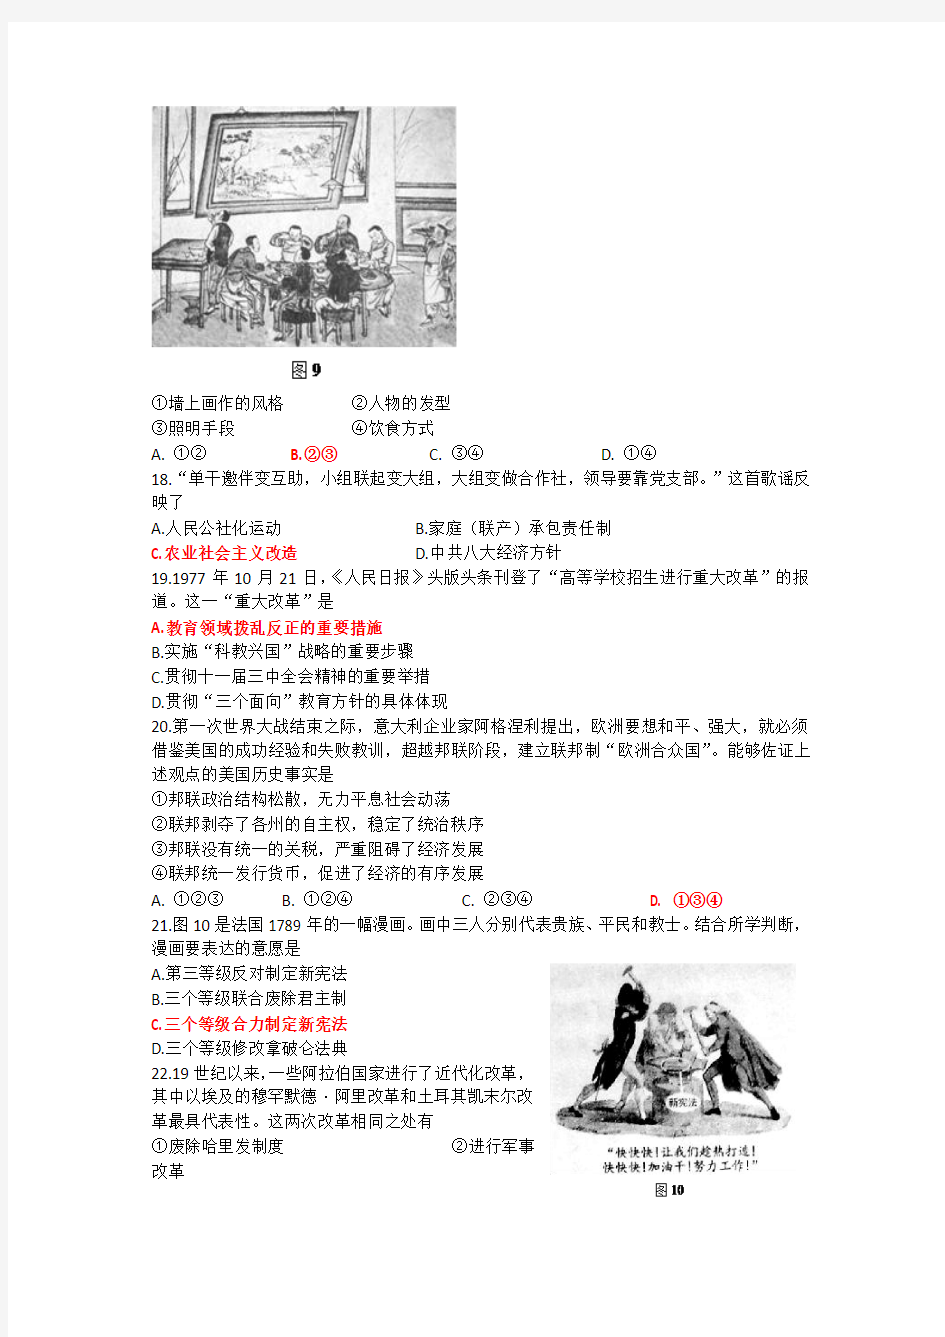 2014年高考历史试题(北京卷)